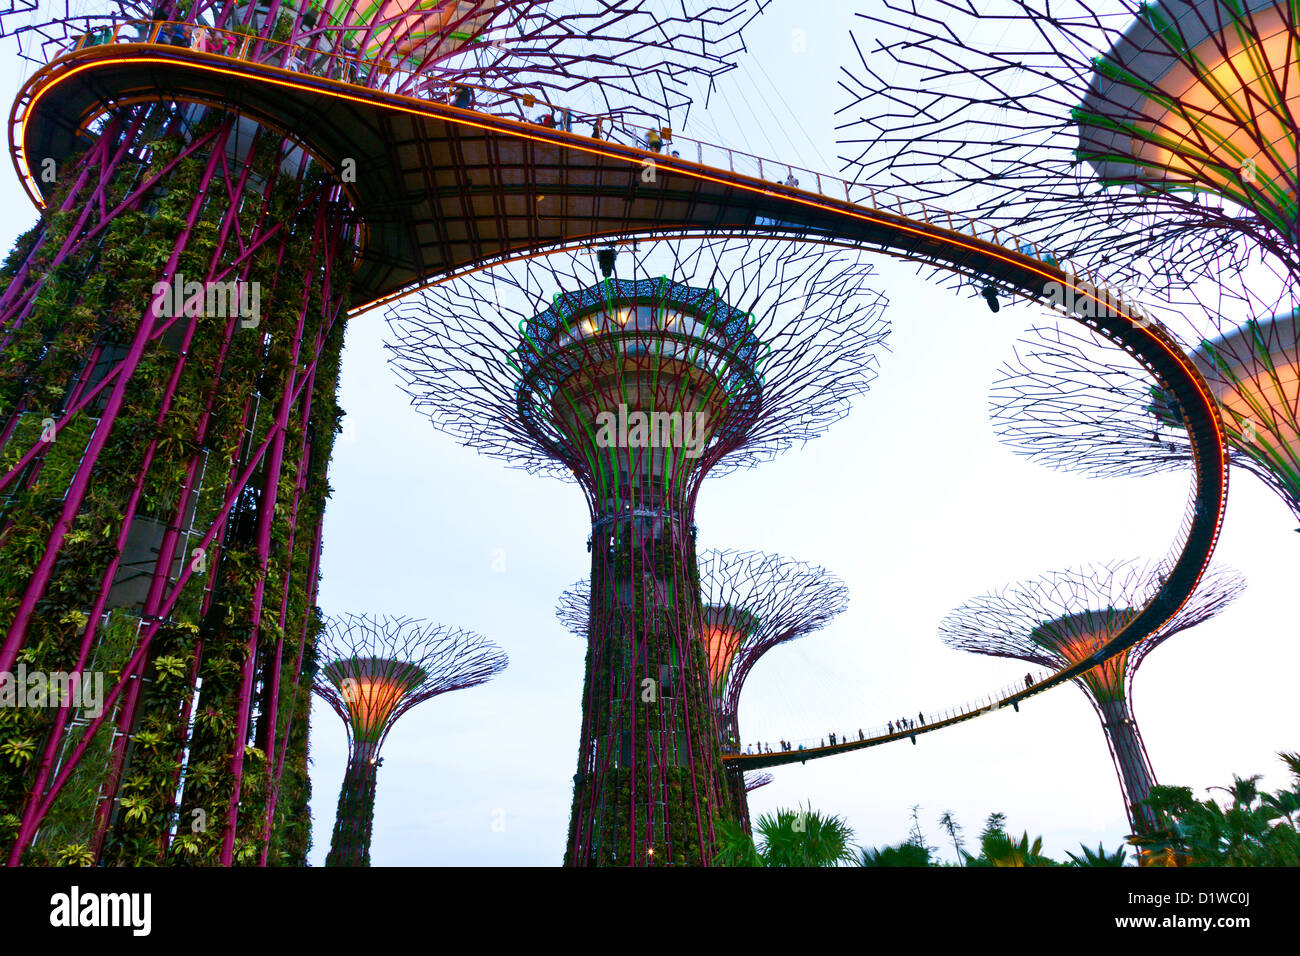 Singapour, la Marina, les jardins du sud de la baie, Supertree Grove, l'OCBC Skyway passerelle surélevée. Banque D'Images